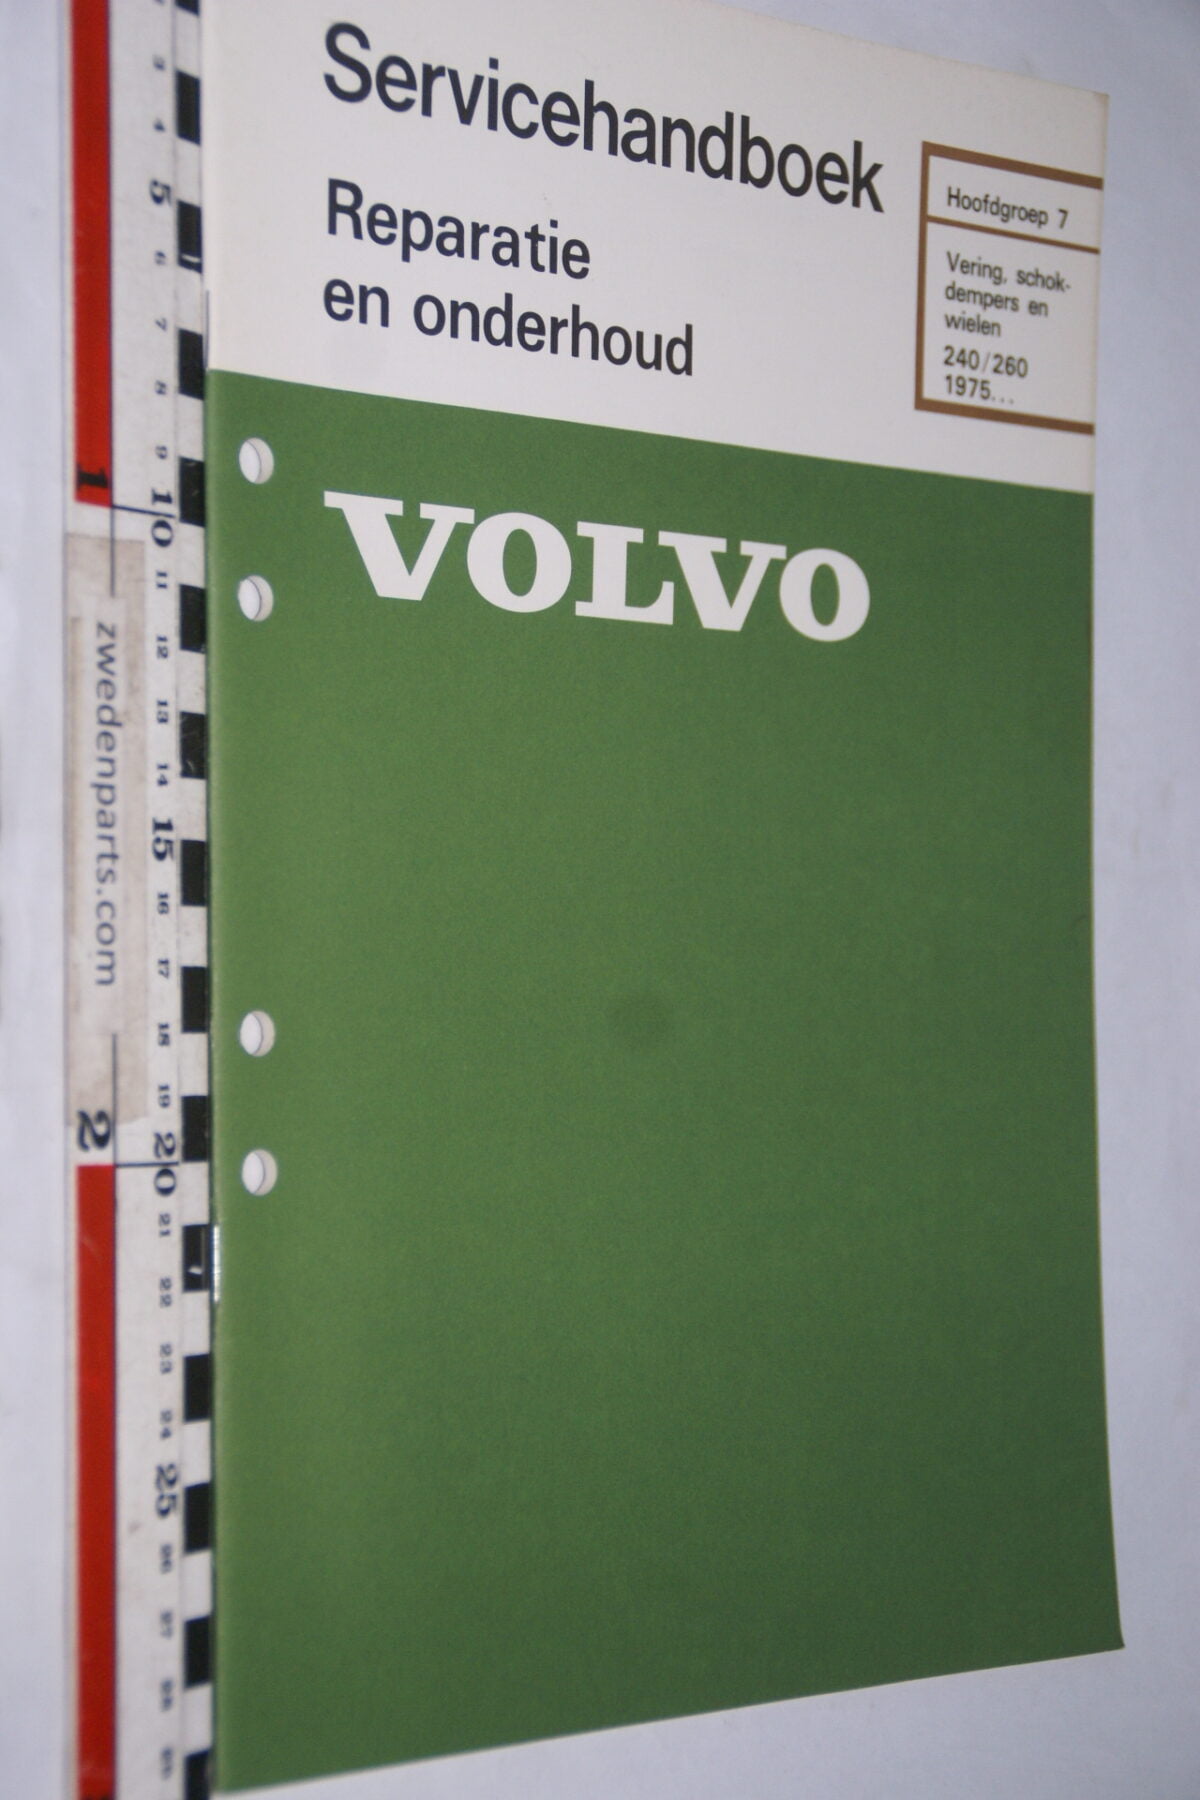 DSC02865 1980 origineel werkplaatsboek 7 Volvo 240 260 vering en schokdempers, 1 van 800, nr TP 30074-1-c1768dca